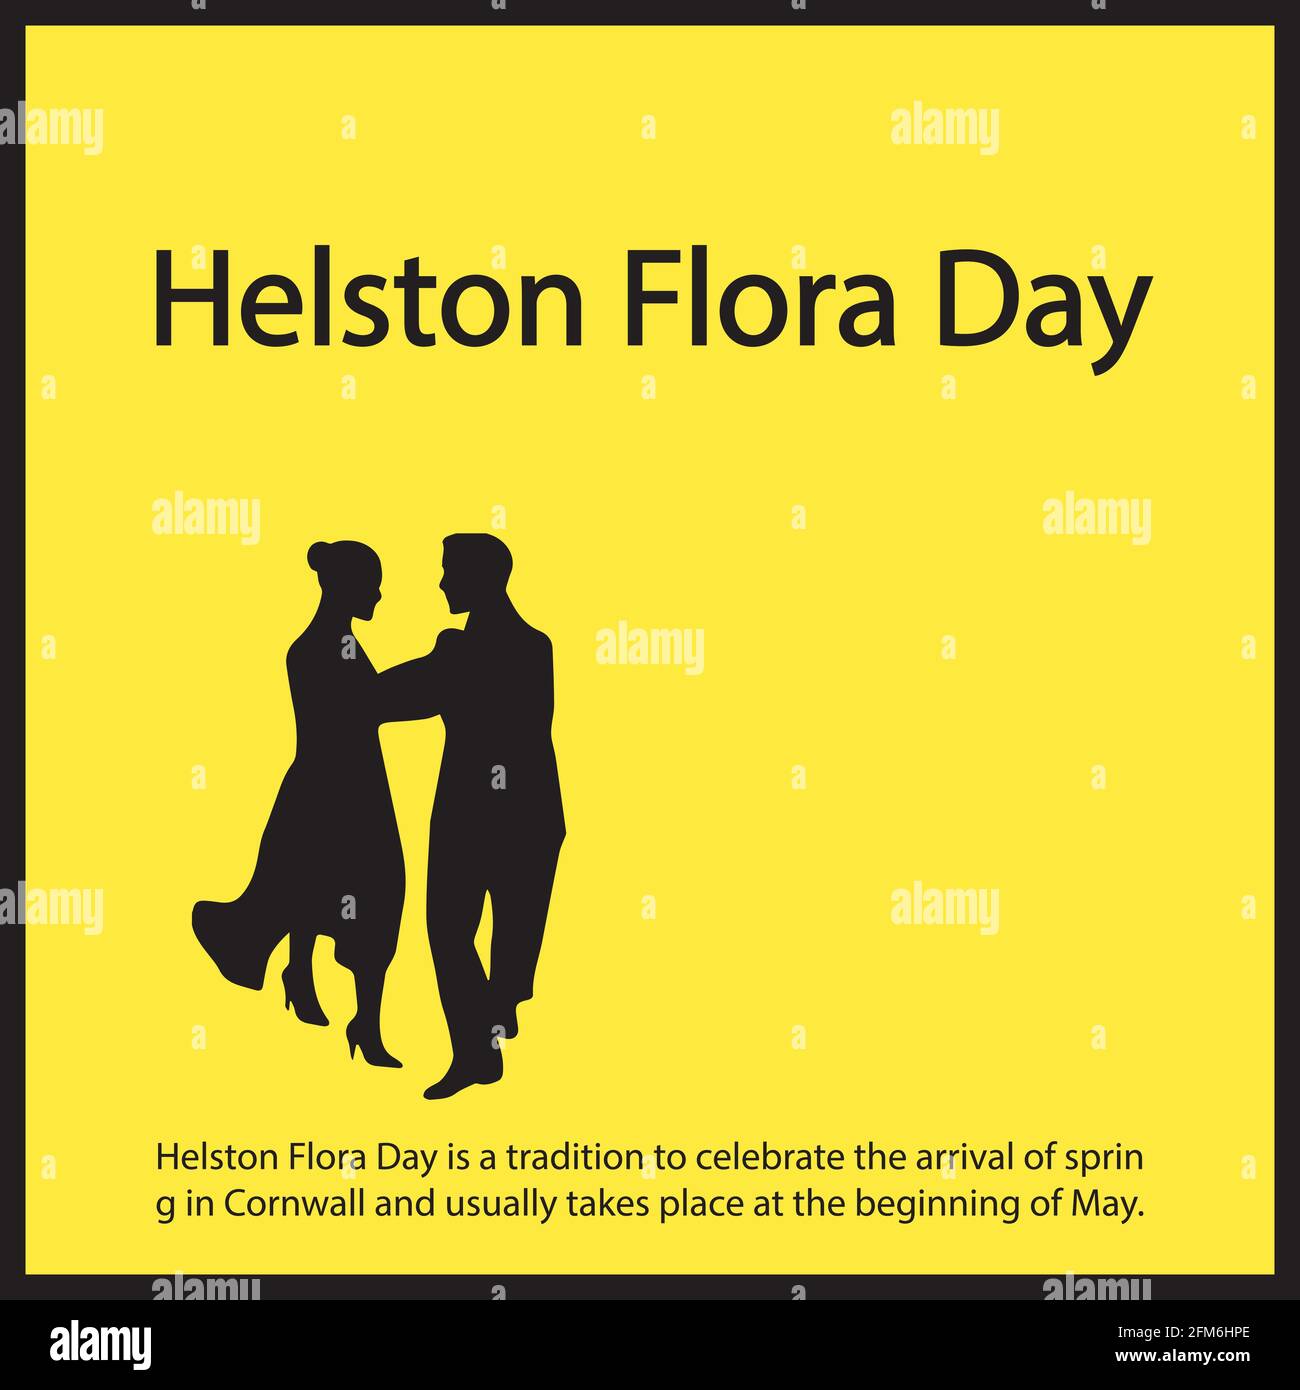 Der Helston Flora Day ist eine Tradition, um die Ankunft des Frühlings in Cornwall zu feiern und findet in der Regel Anfang Mai statt. Stock Vektor